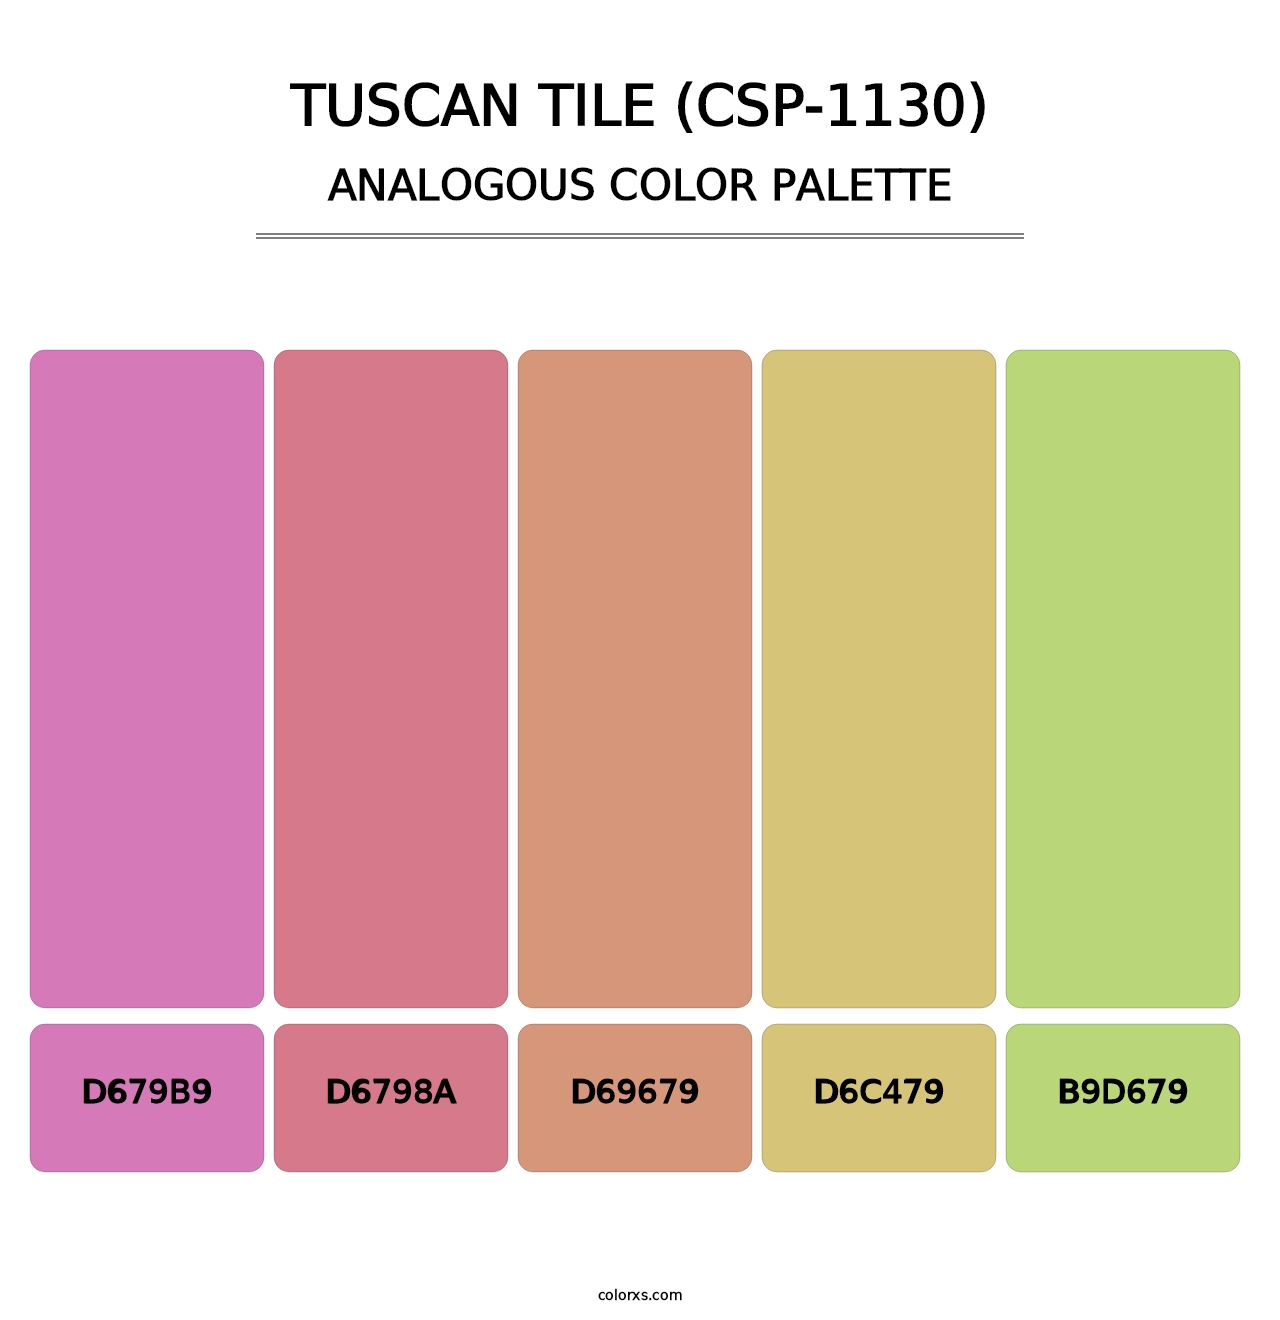 Tuscan Tile (CSP-1130) - Analogous Color Palette